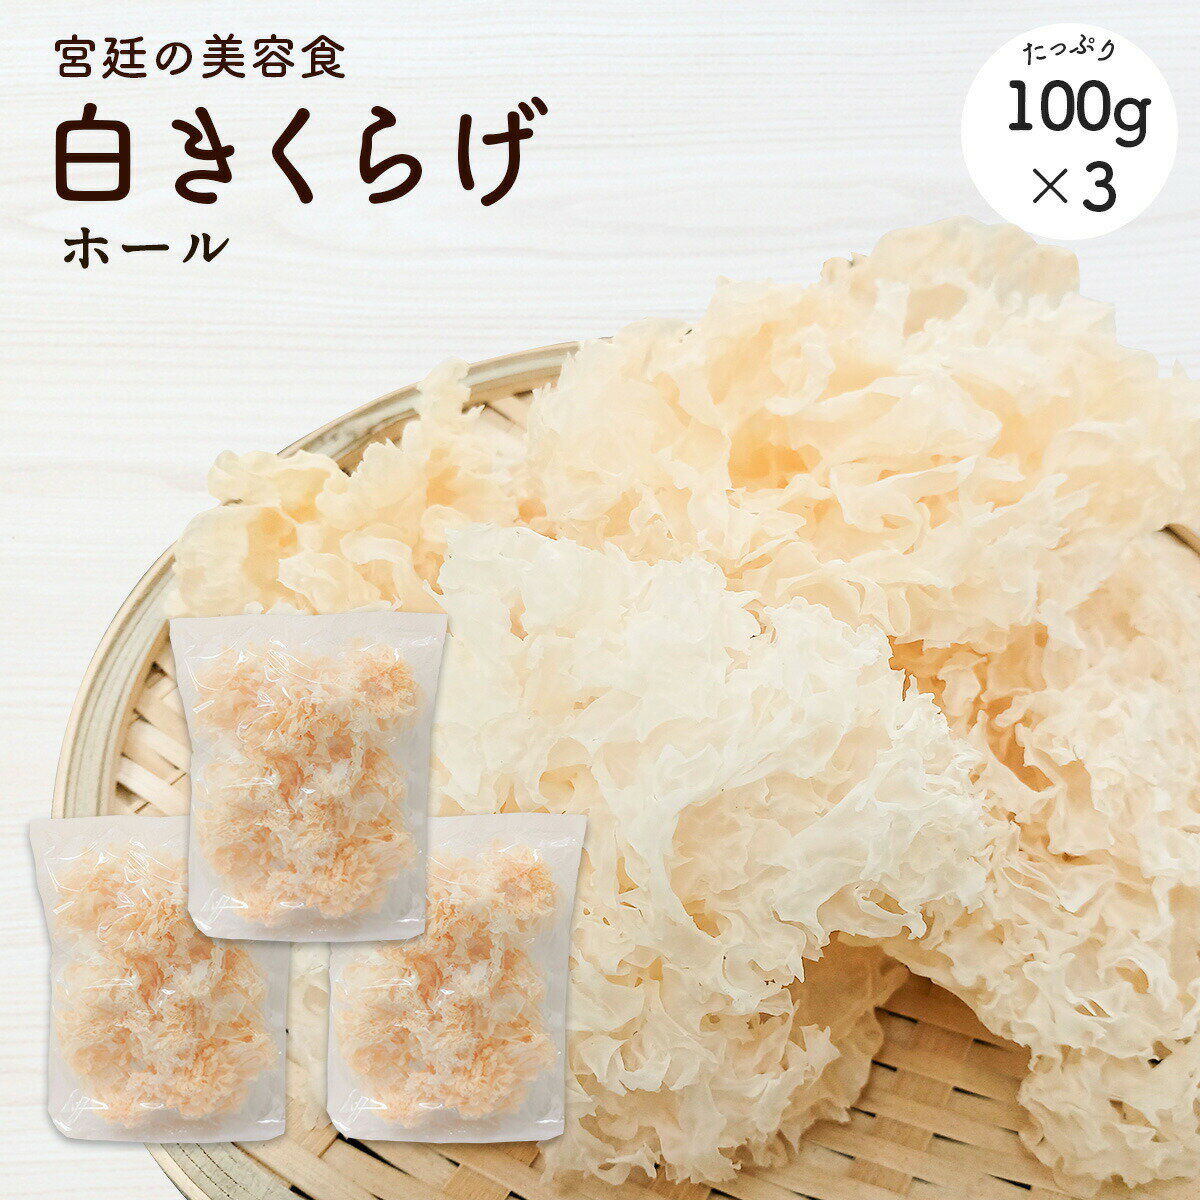 白木耳100g ×3袋| 300g白木耳 木耳 食物纖維豐富 營養滿點 高級食材 日本必買 | 日本樂天熱銷